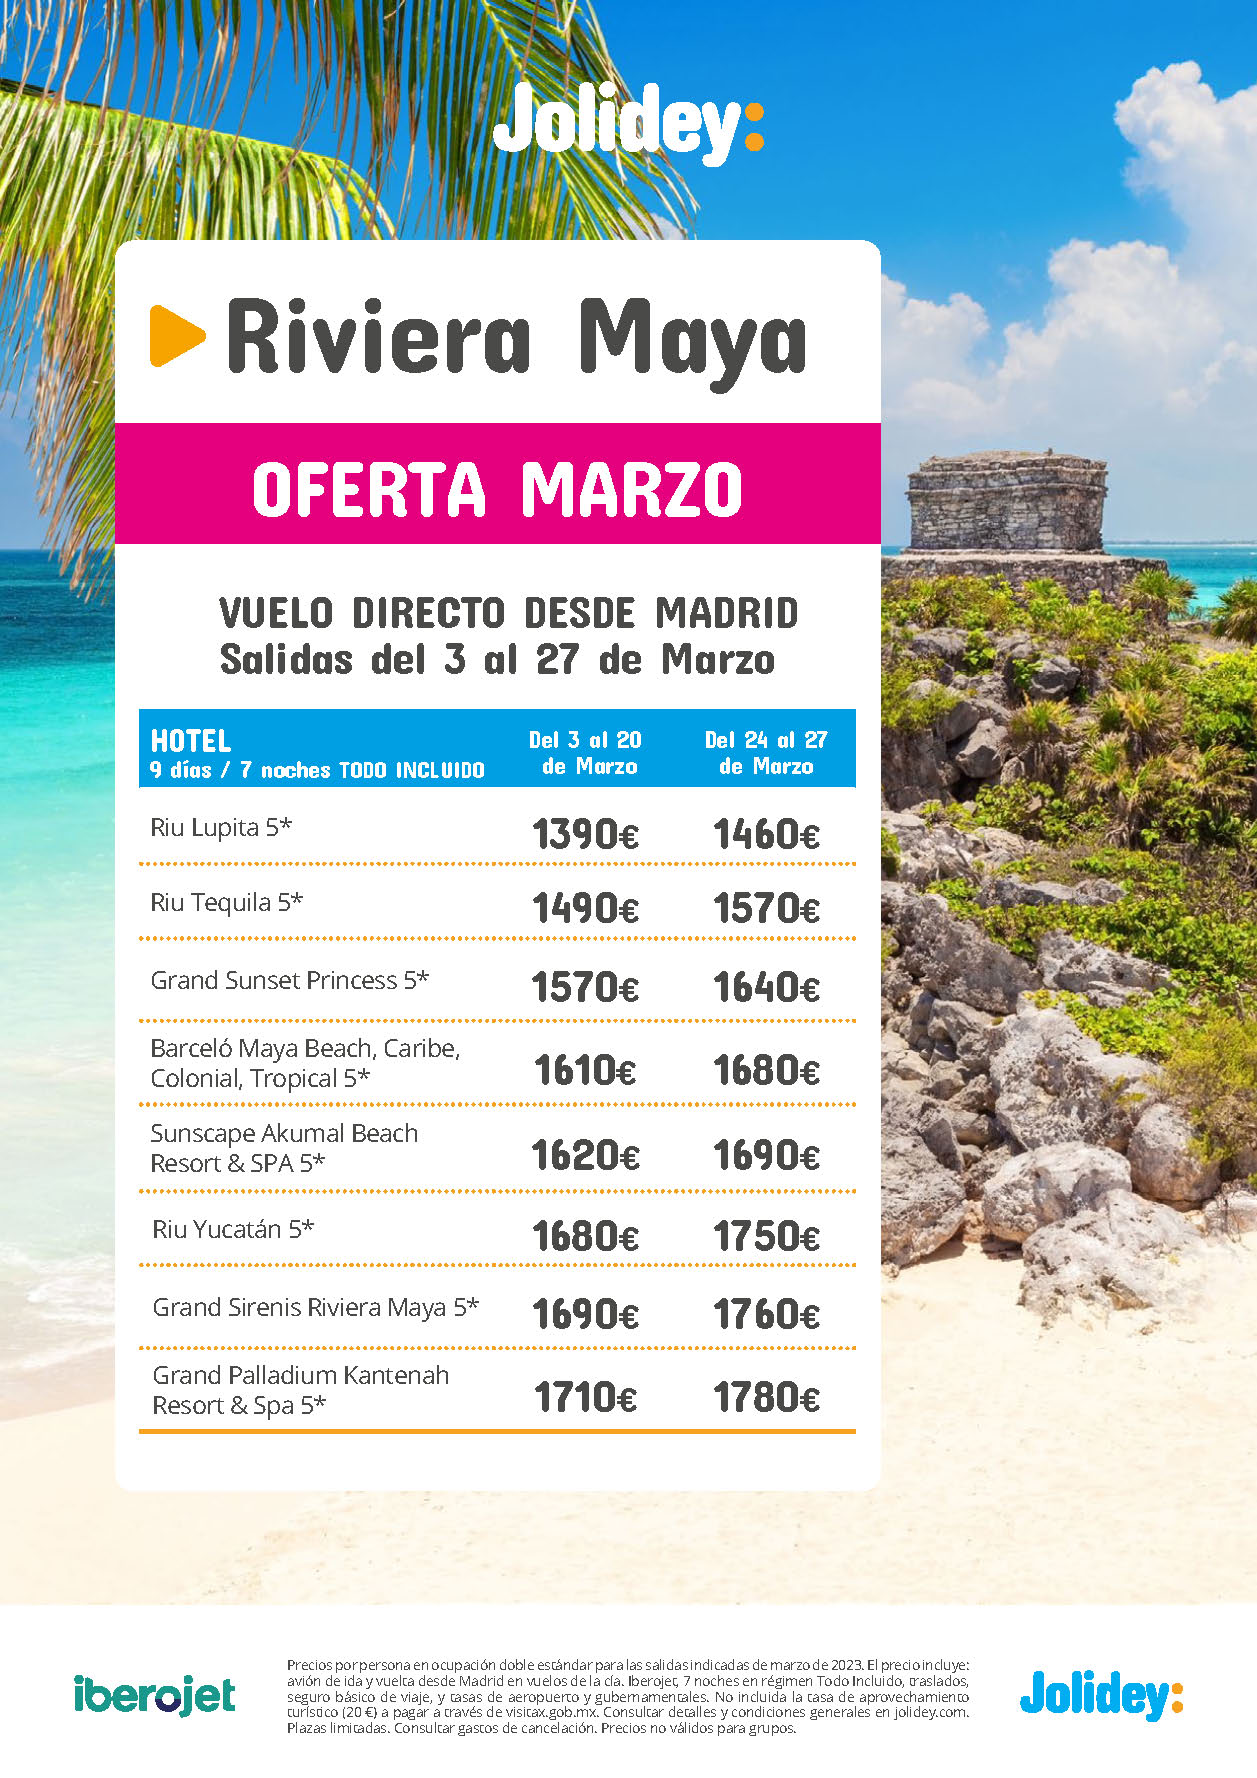 Oferta Jolidey Marzo 2023 en Riviera Maya Mexico 9 dias Todo Incluido salida en vuelo directo desde Madrid